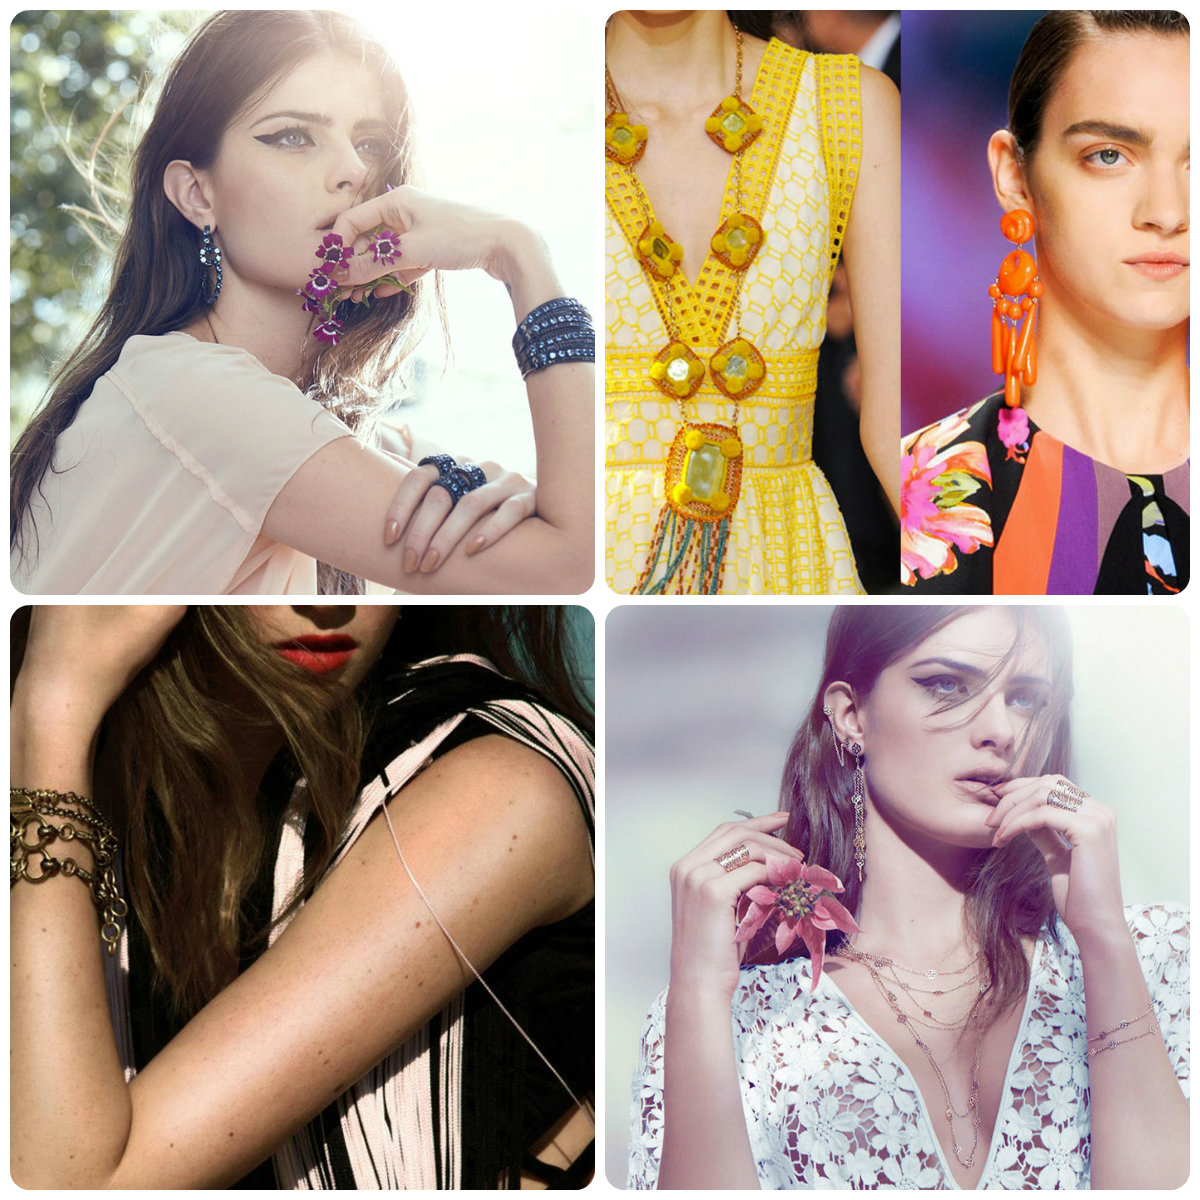 Šperky a bižutéria – trendy na leto 2013